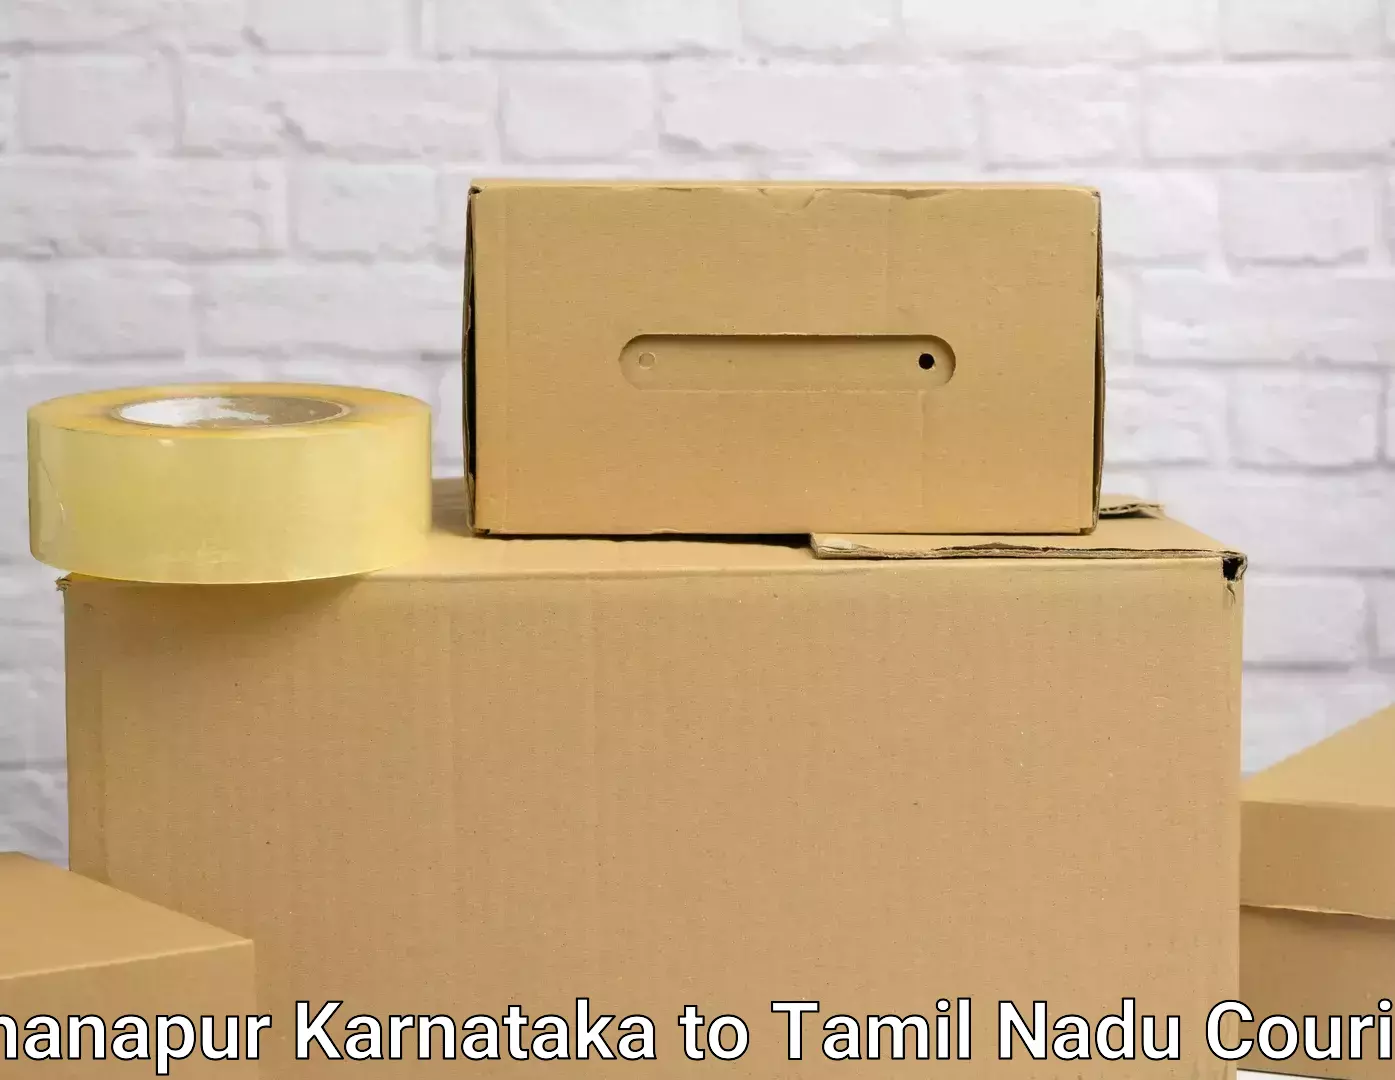 Furniture moving service Khanapur Karnataka to Erode